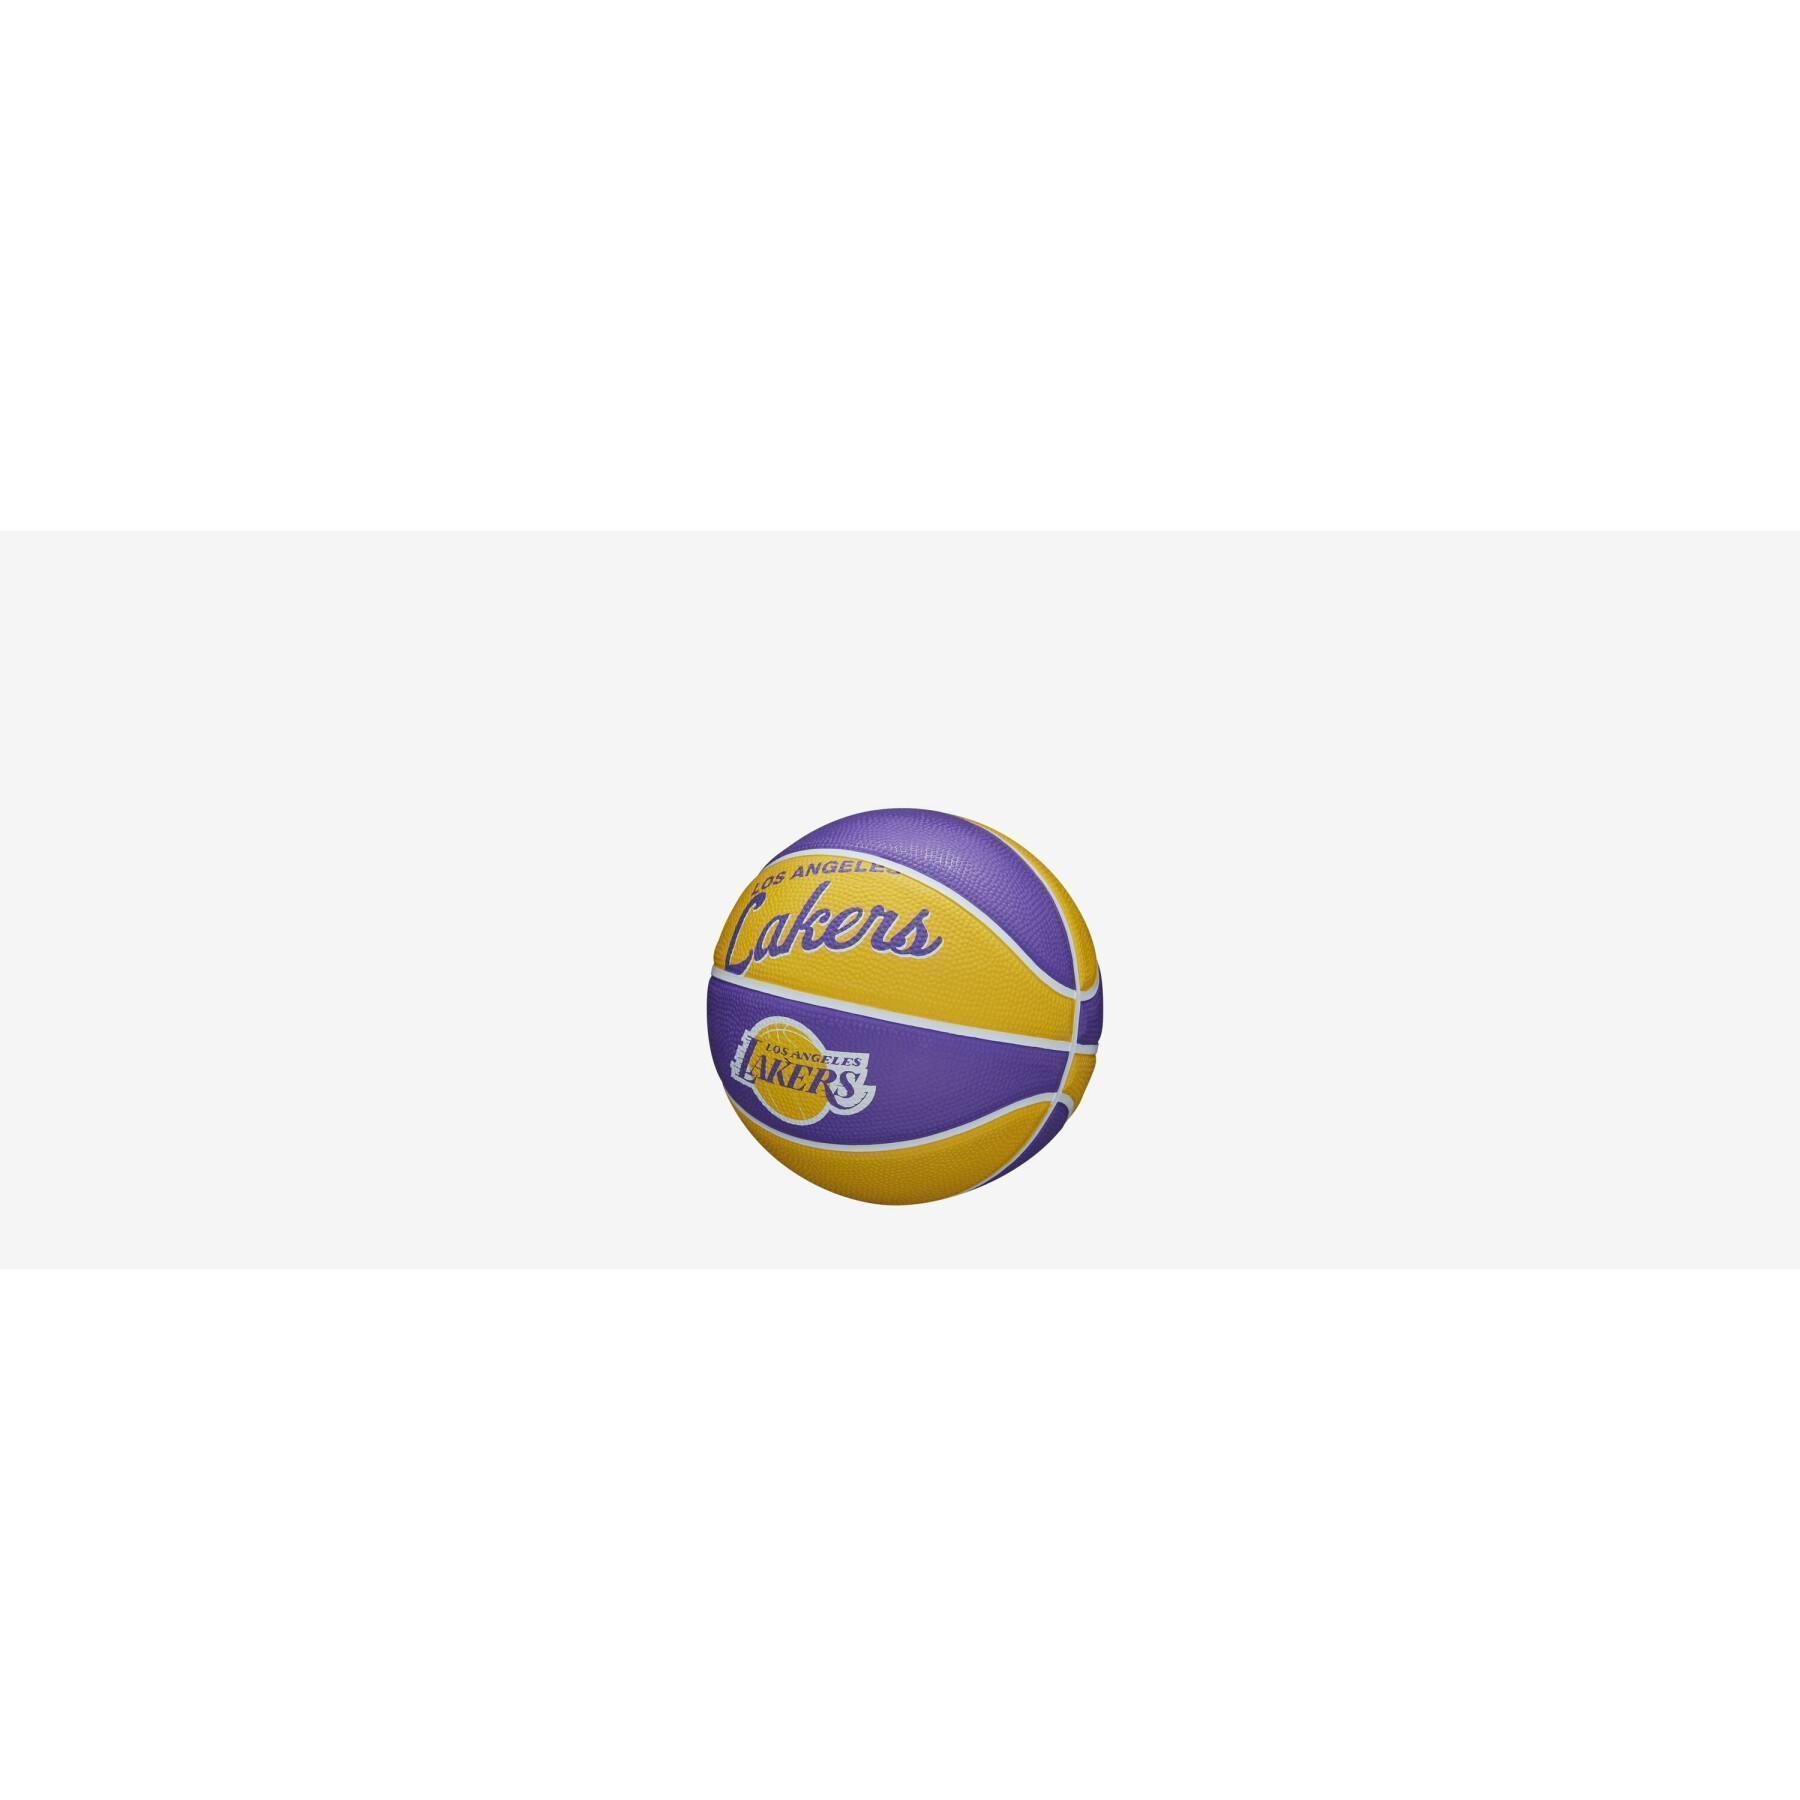 Miniboll Los Angeles Lakers Nba Team Retro 2021/22